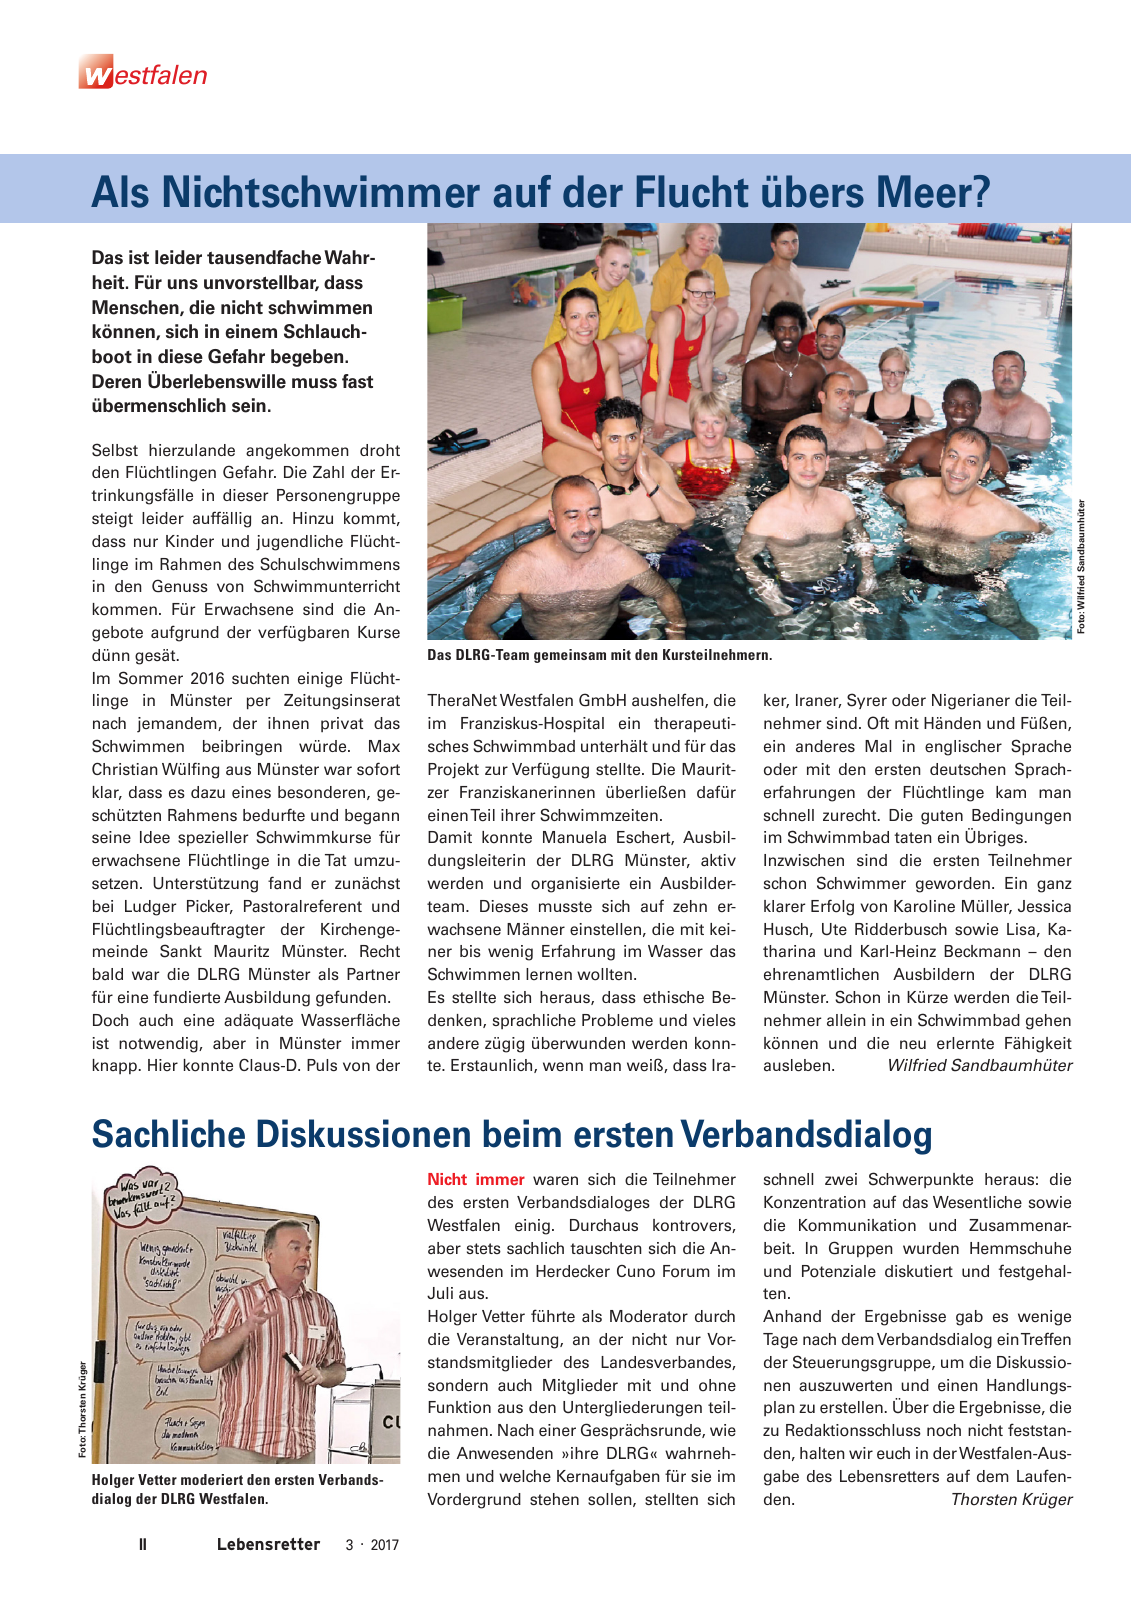 Vorschau Lebensretter 3/2017 - Regionalausgabe Westfalen Seite 4